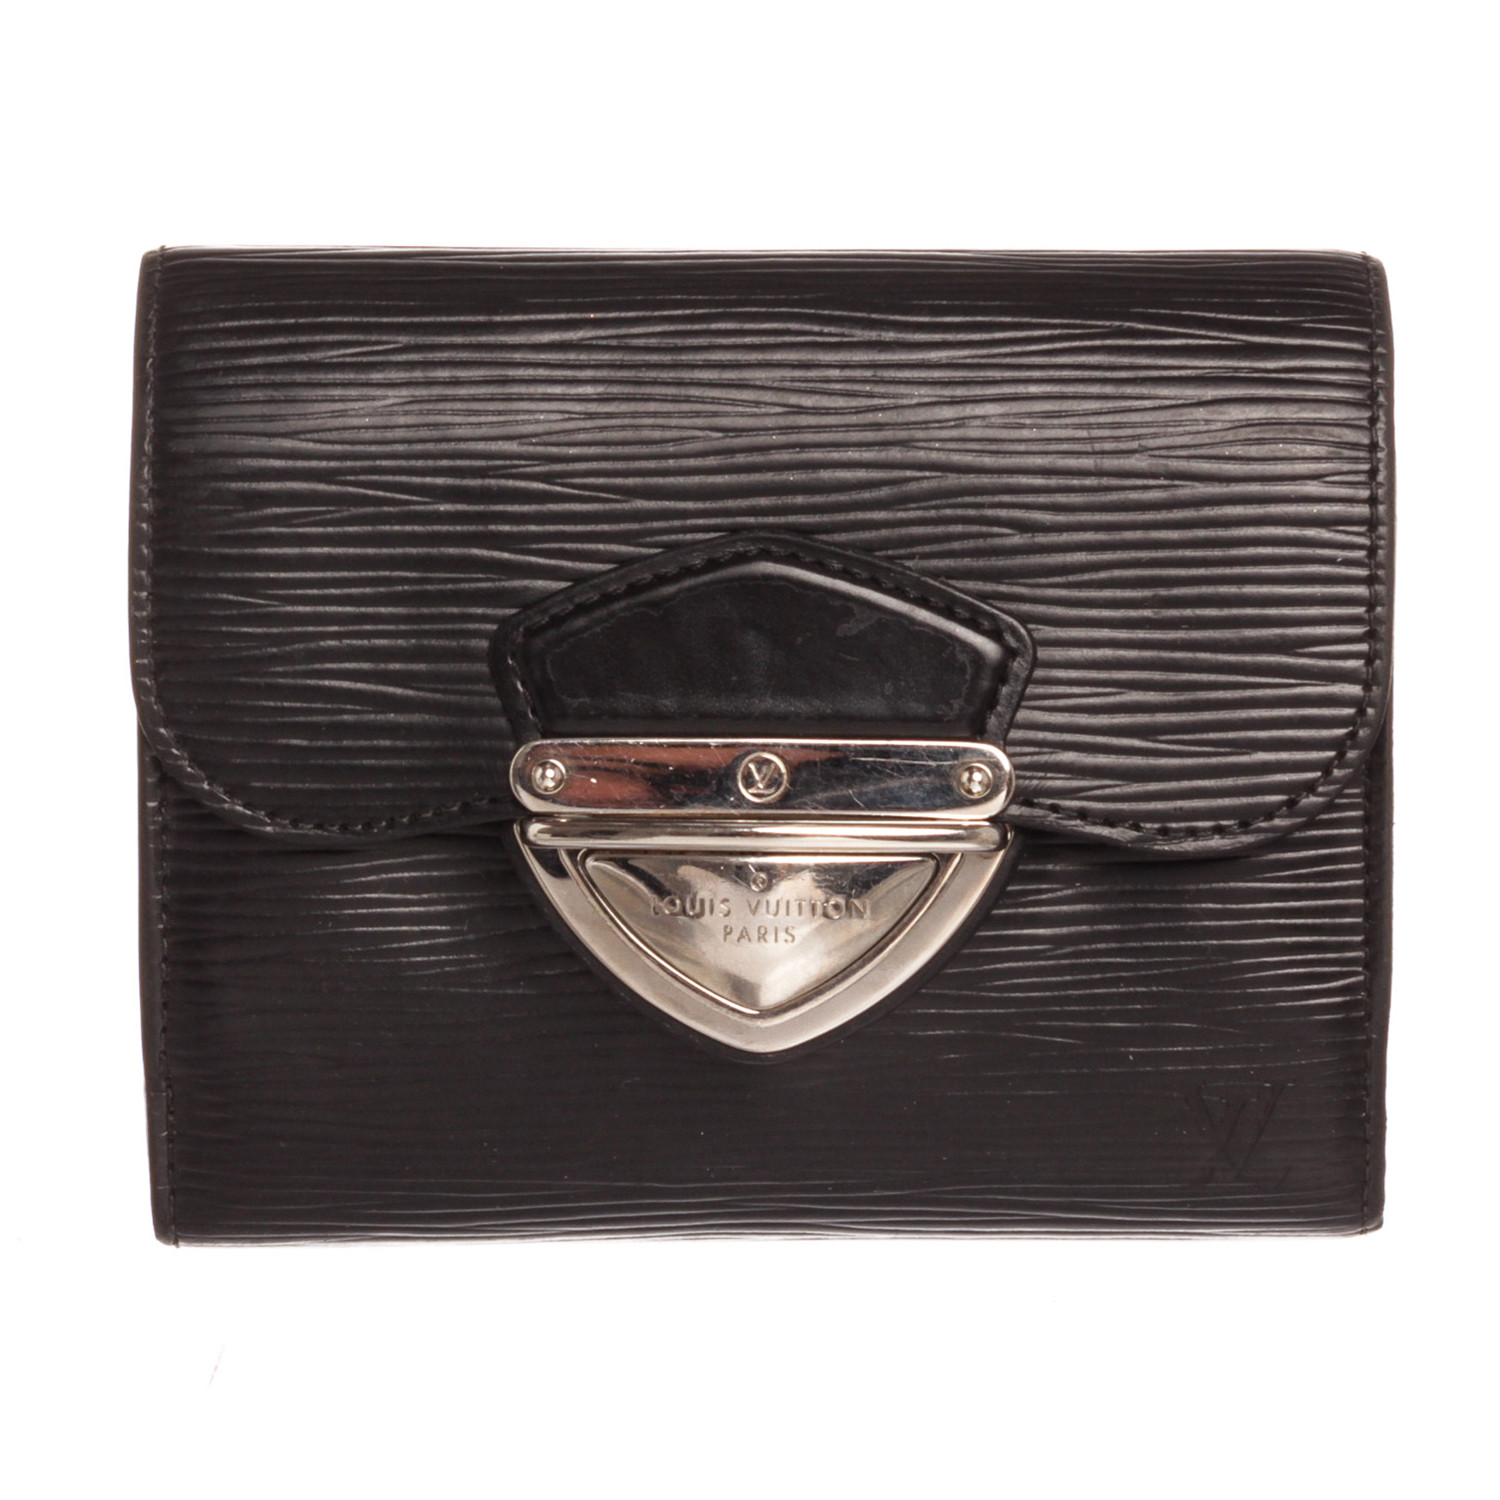 Louis Vuitton // 2009 Black Epi Leather Joey Wallet // SR1089 // Pre-Owned - Vintage Designer ...